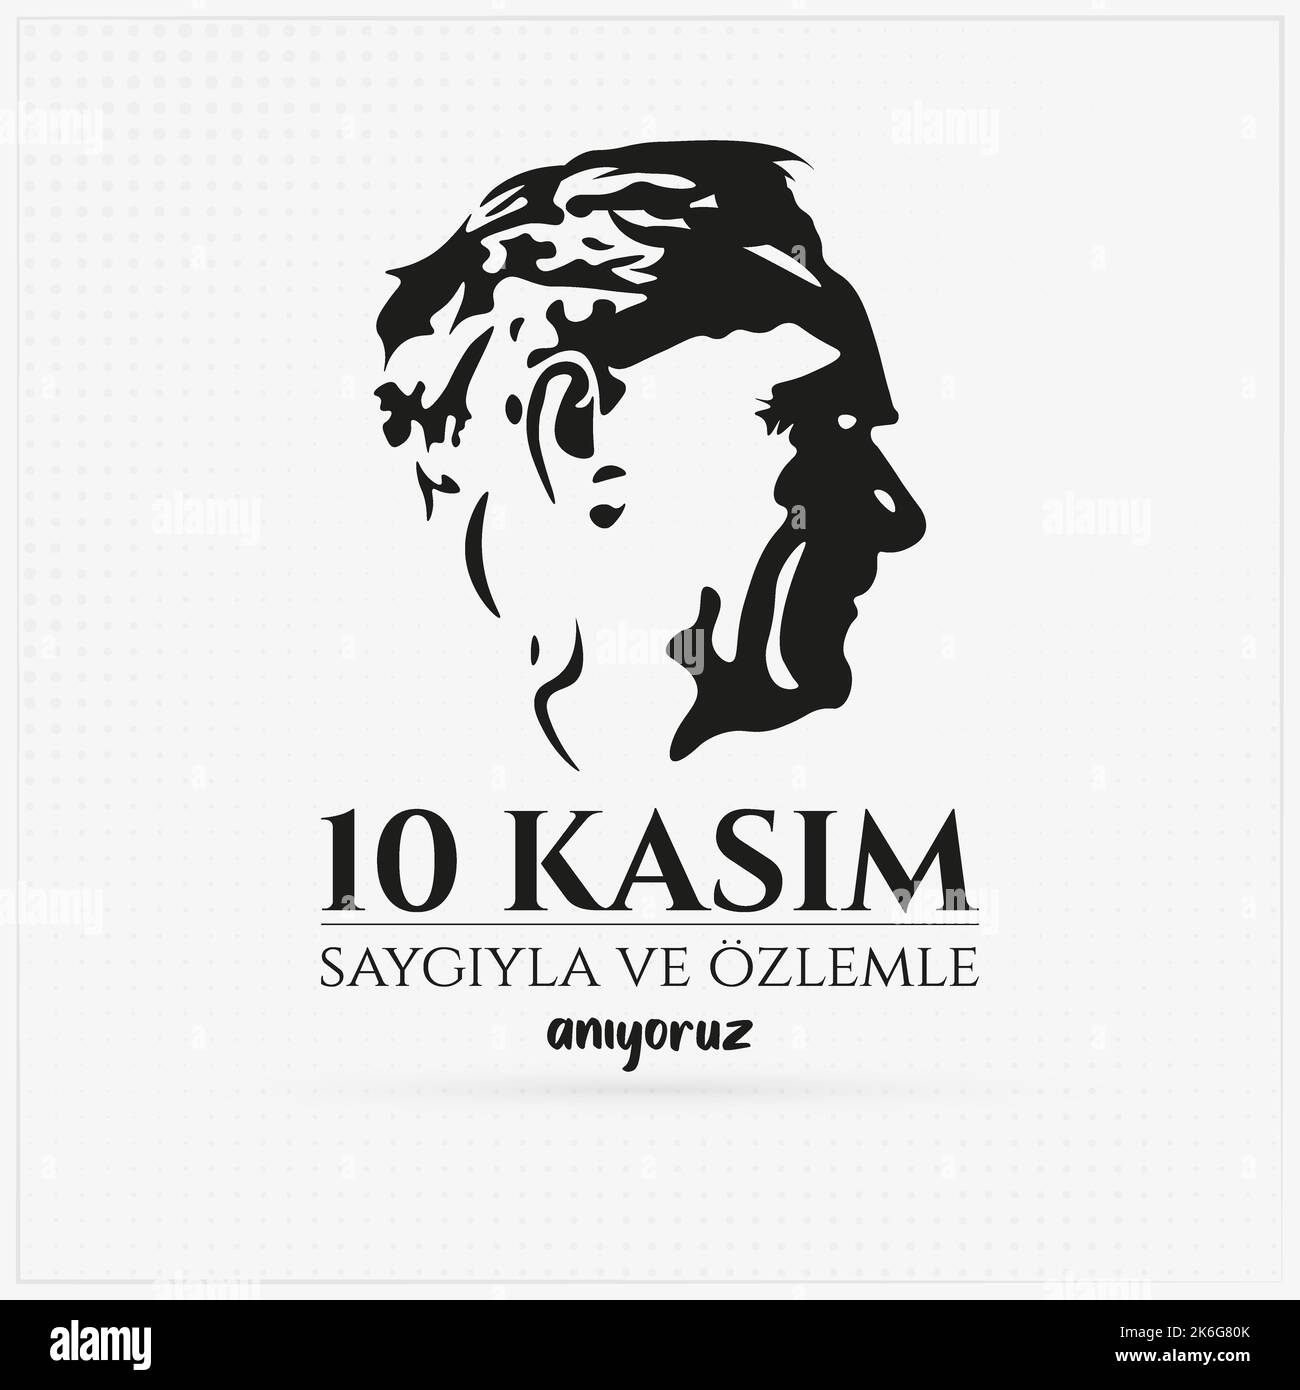 Il 10 novembre, giorno della morte di Mustafa Kemal Atatürk. Traduzione Turco; 10 kasım saygı ve özlemle anıyoruz. Illustrazione vettoriale. Illustrazione Vettoriale